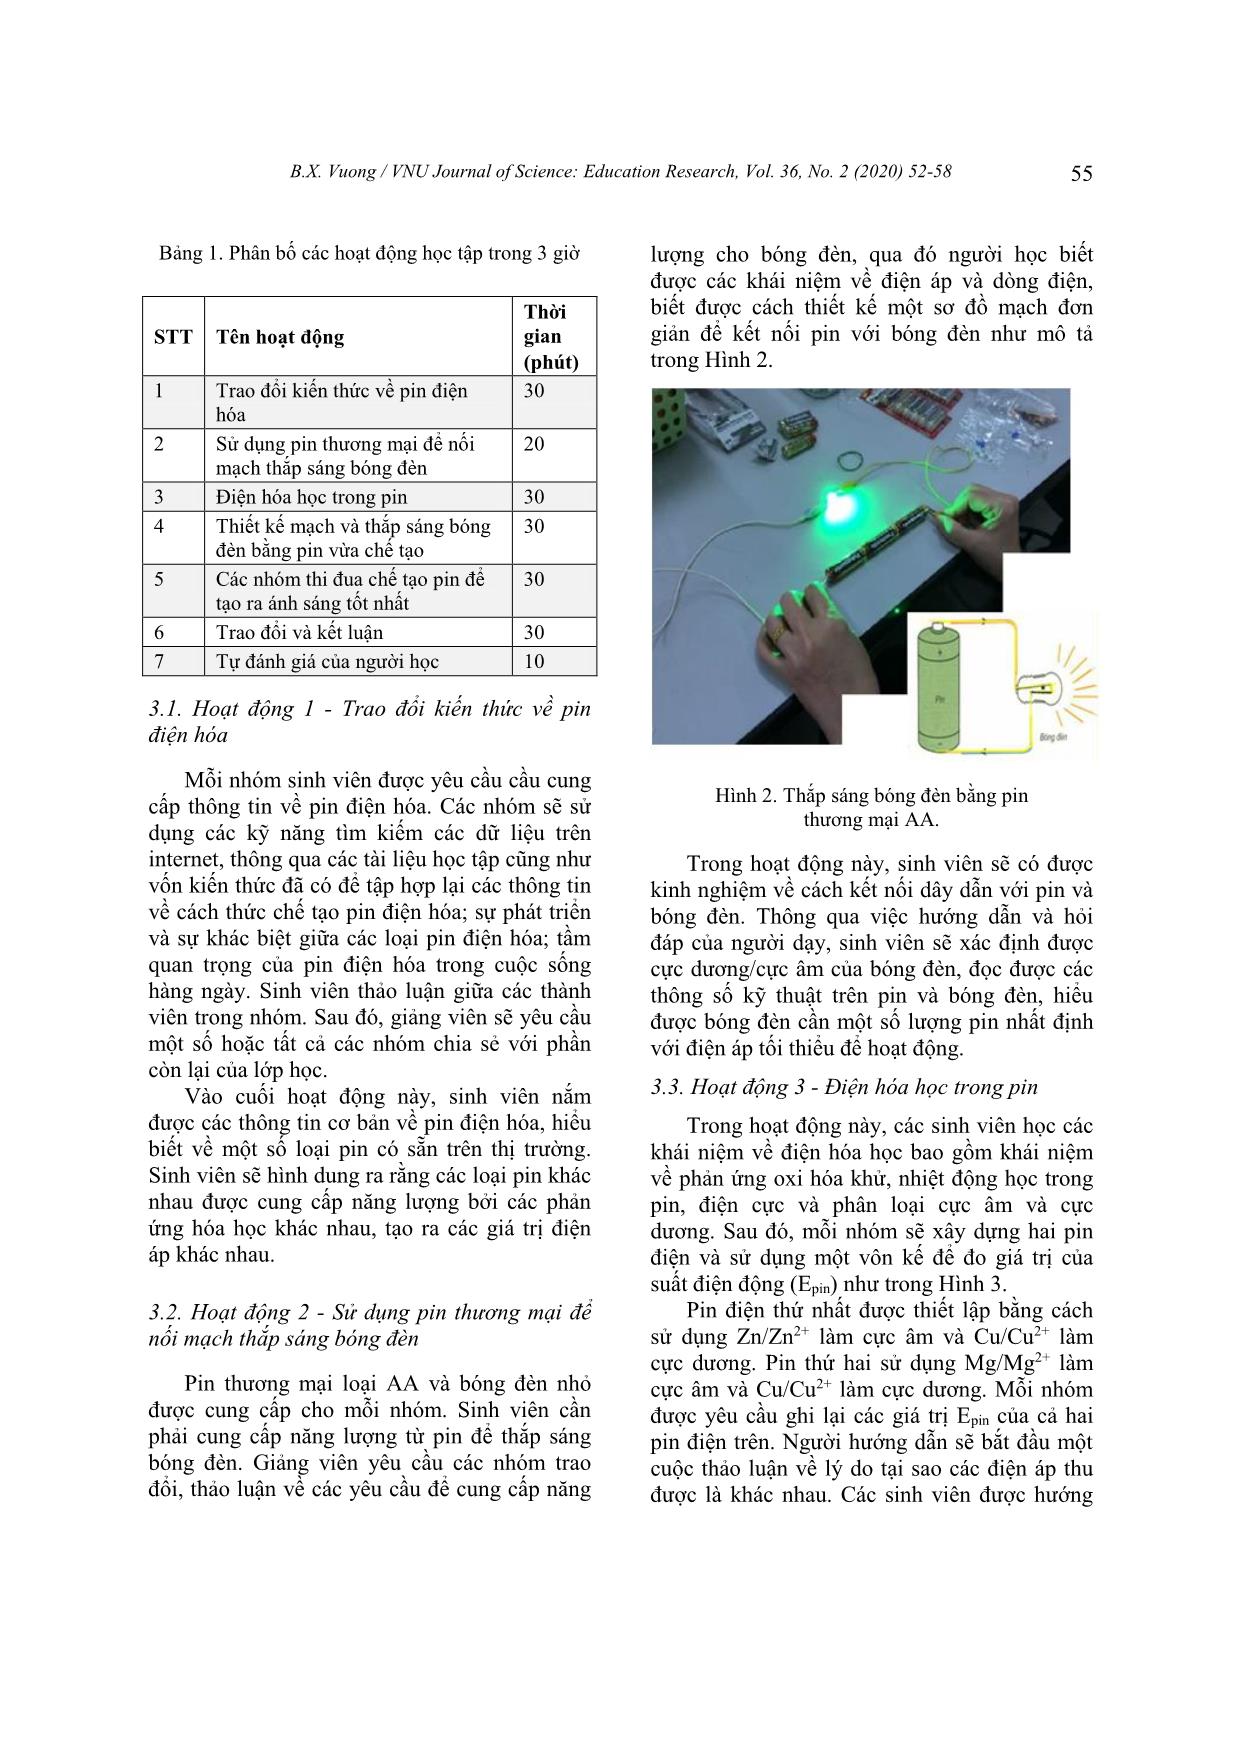 Chế tạo pin điện hóa trong phòng thí nghiệm theo mô hình dạy học STEM trang 4